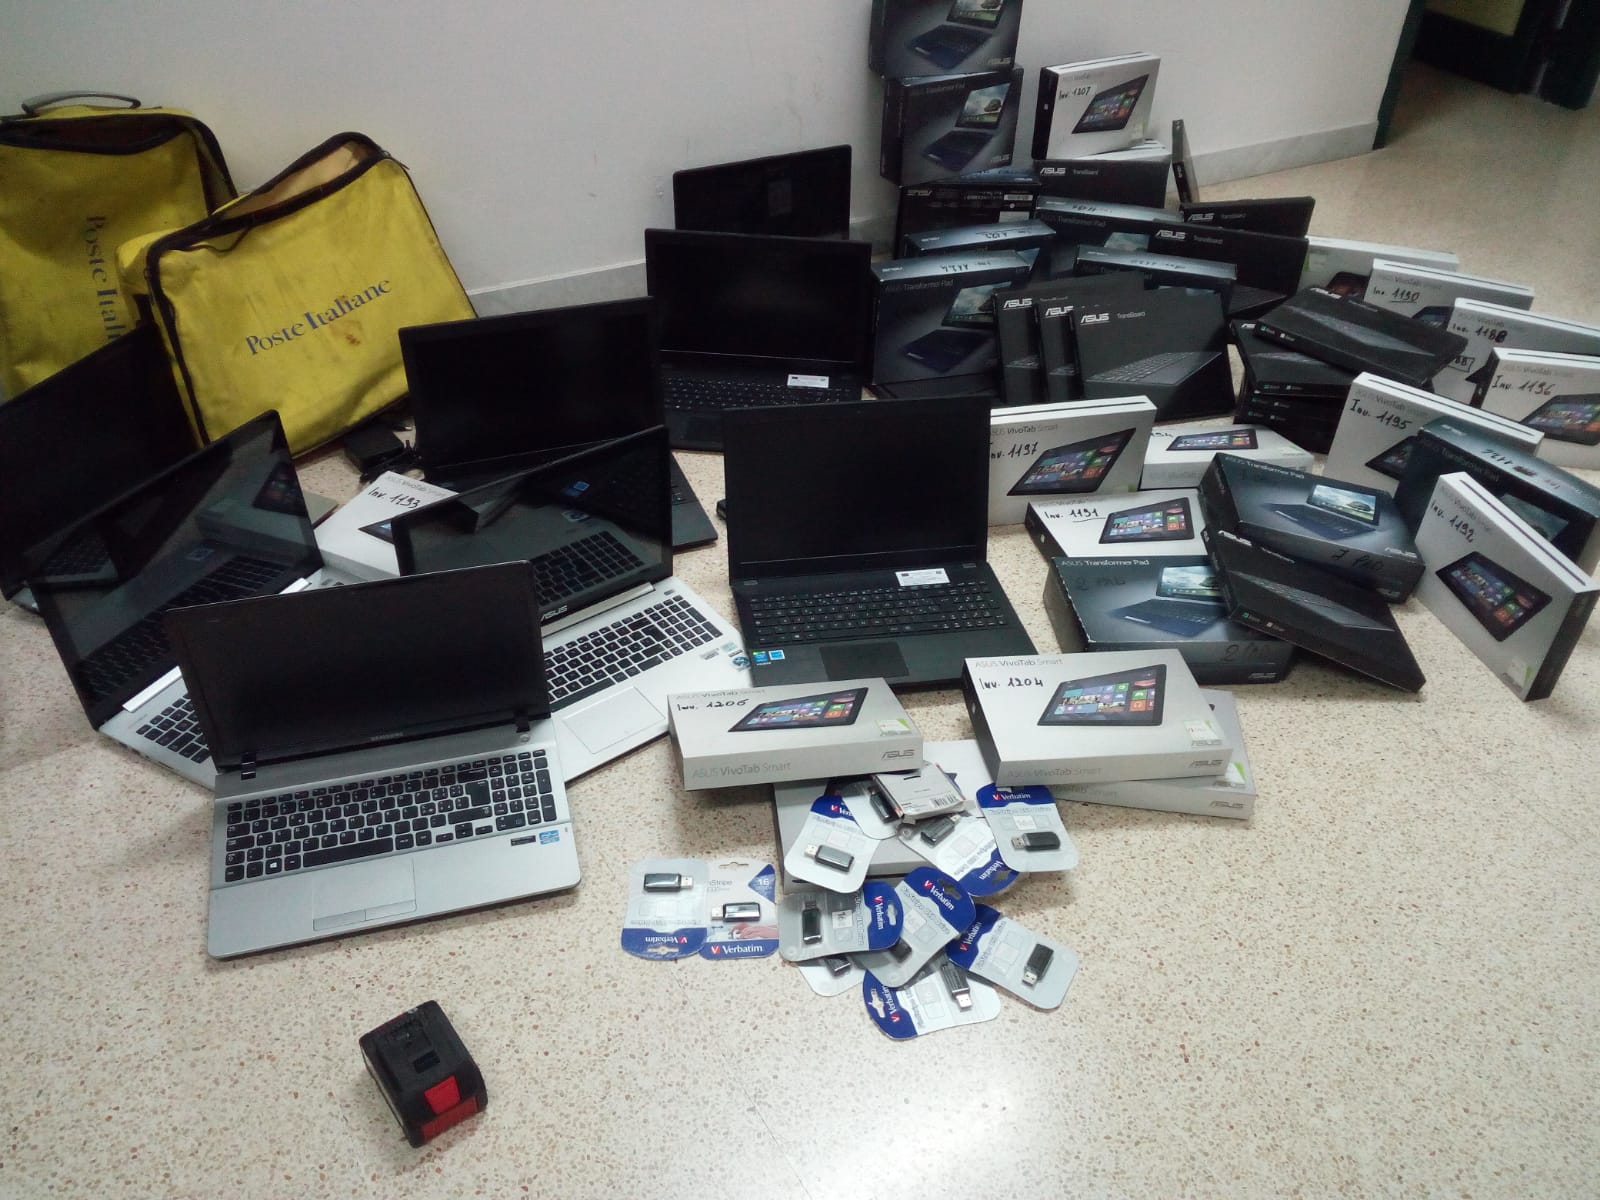 Mezzo milione di euro di materiale informatico rubato nelle scuole di Basilicata, Puglia e Abruzzo. Due persone in manette nell’ambito dell’operazione dei Carabinieri di Matera “Notebook”